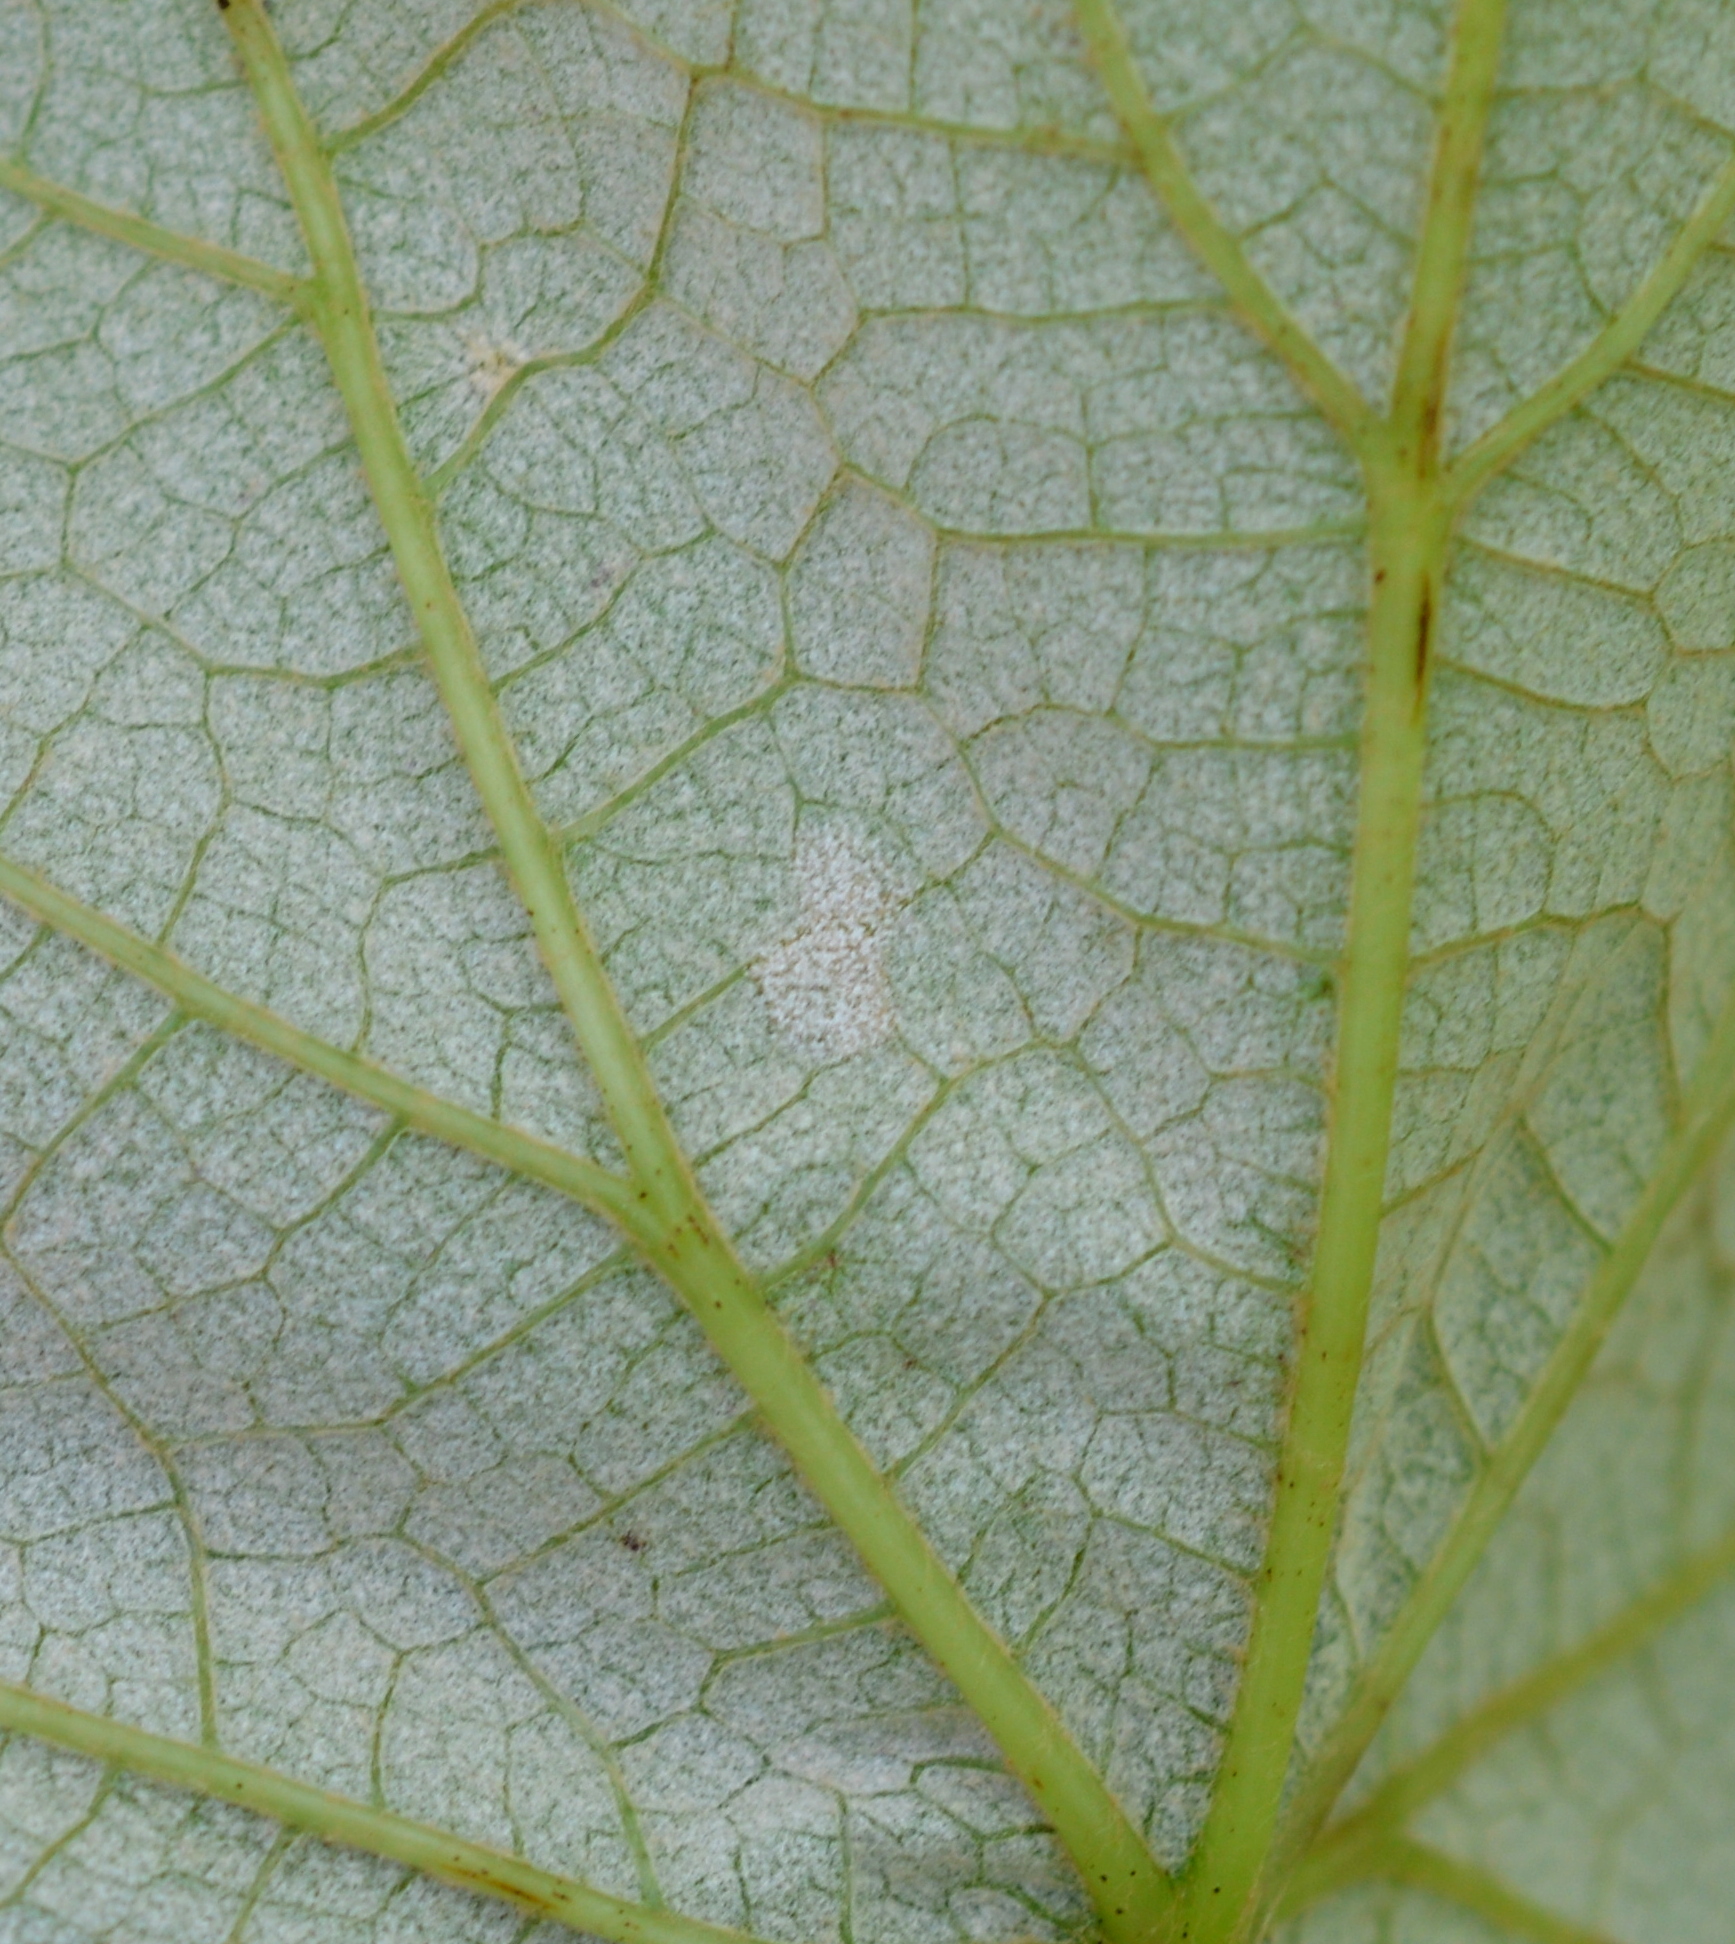 Downy mildew on leaf lower 6-15-18 Concord BarodaKM